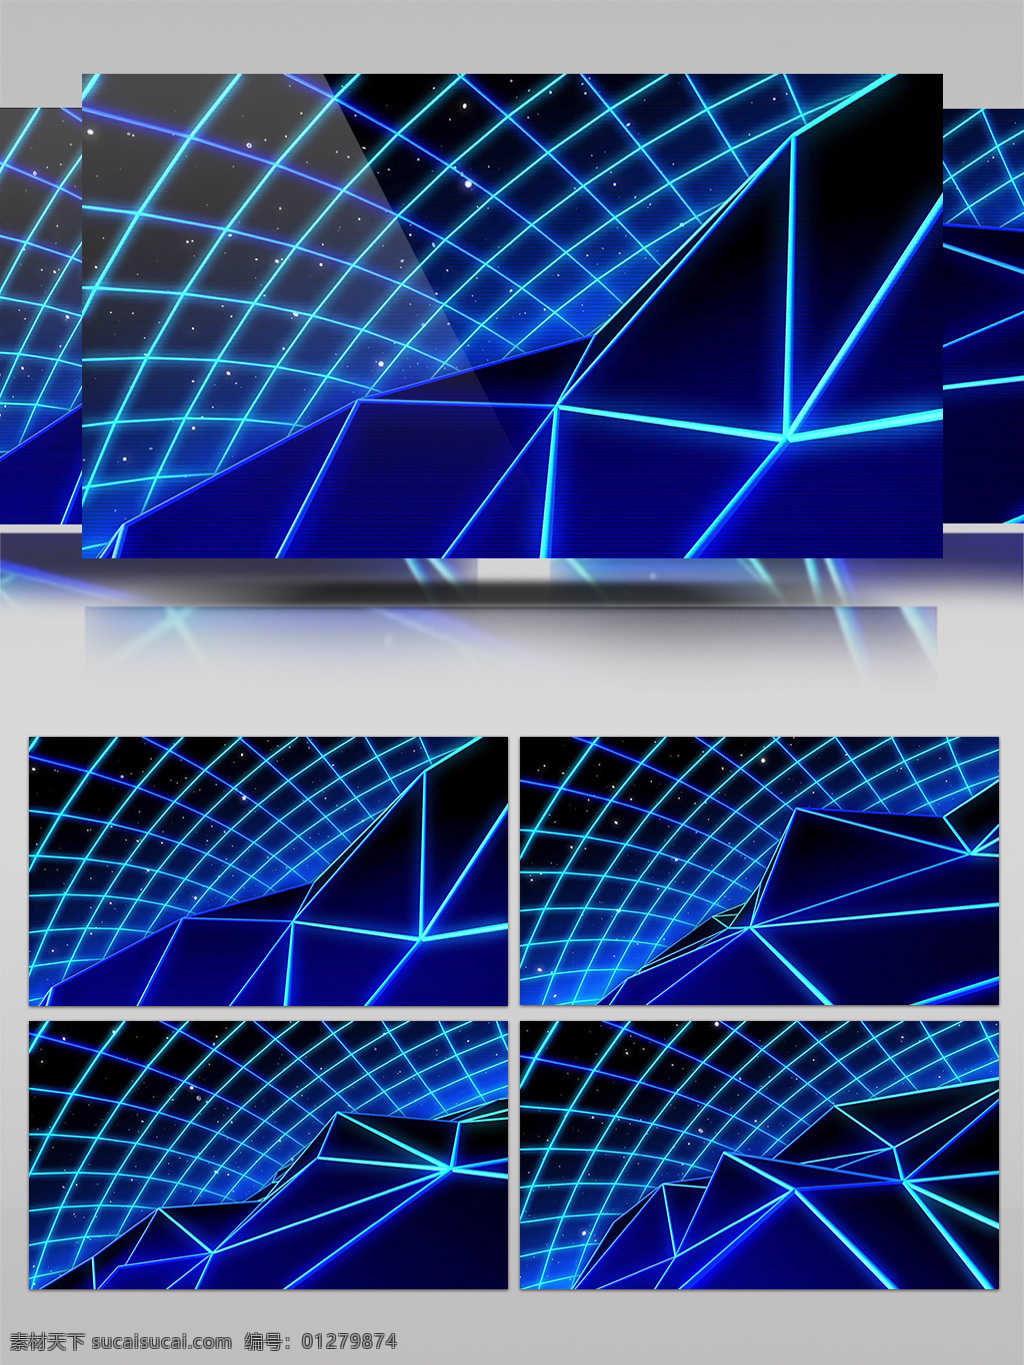 蔚蓝 网格 3d 科技 酷 炫 效果 视频 交错线条 网格交错 蓝色线条 立体几何 装饰风格 动态展示 蓝色空间 房间装饰 壁纸图案 高清 背景